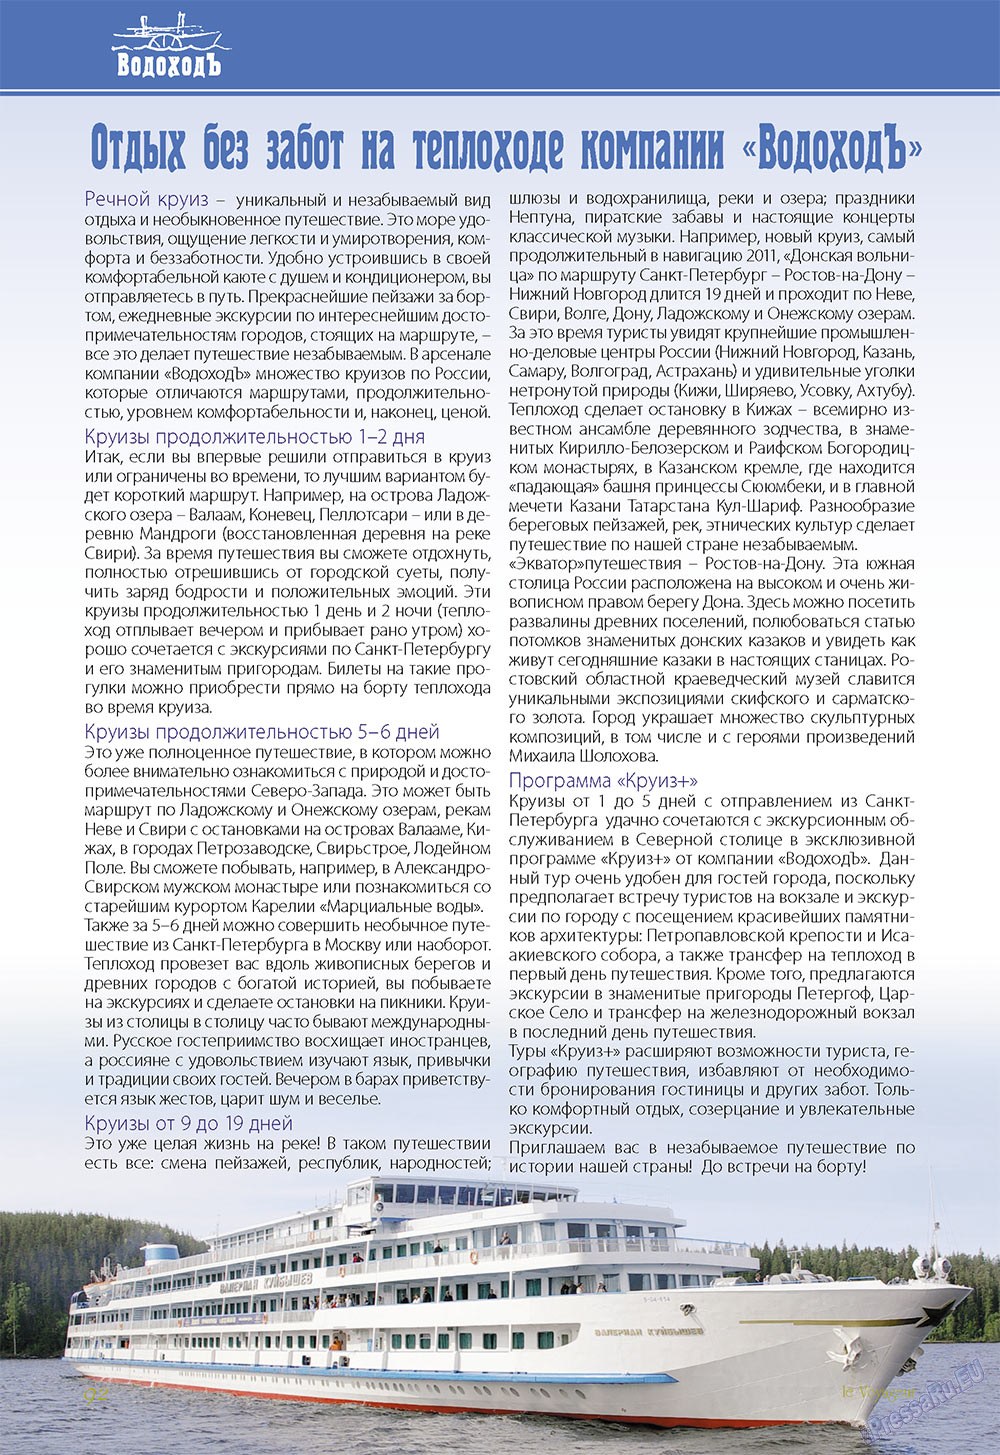 Le Voyageur (журнал). 2011 год, номер 18, стр. 94